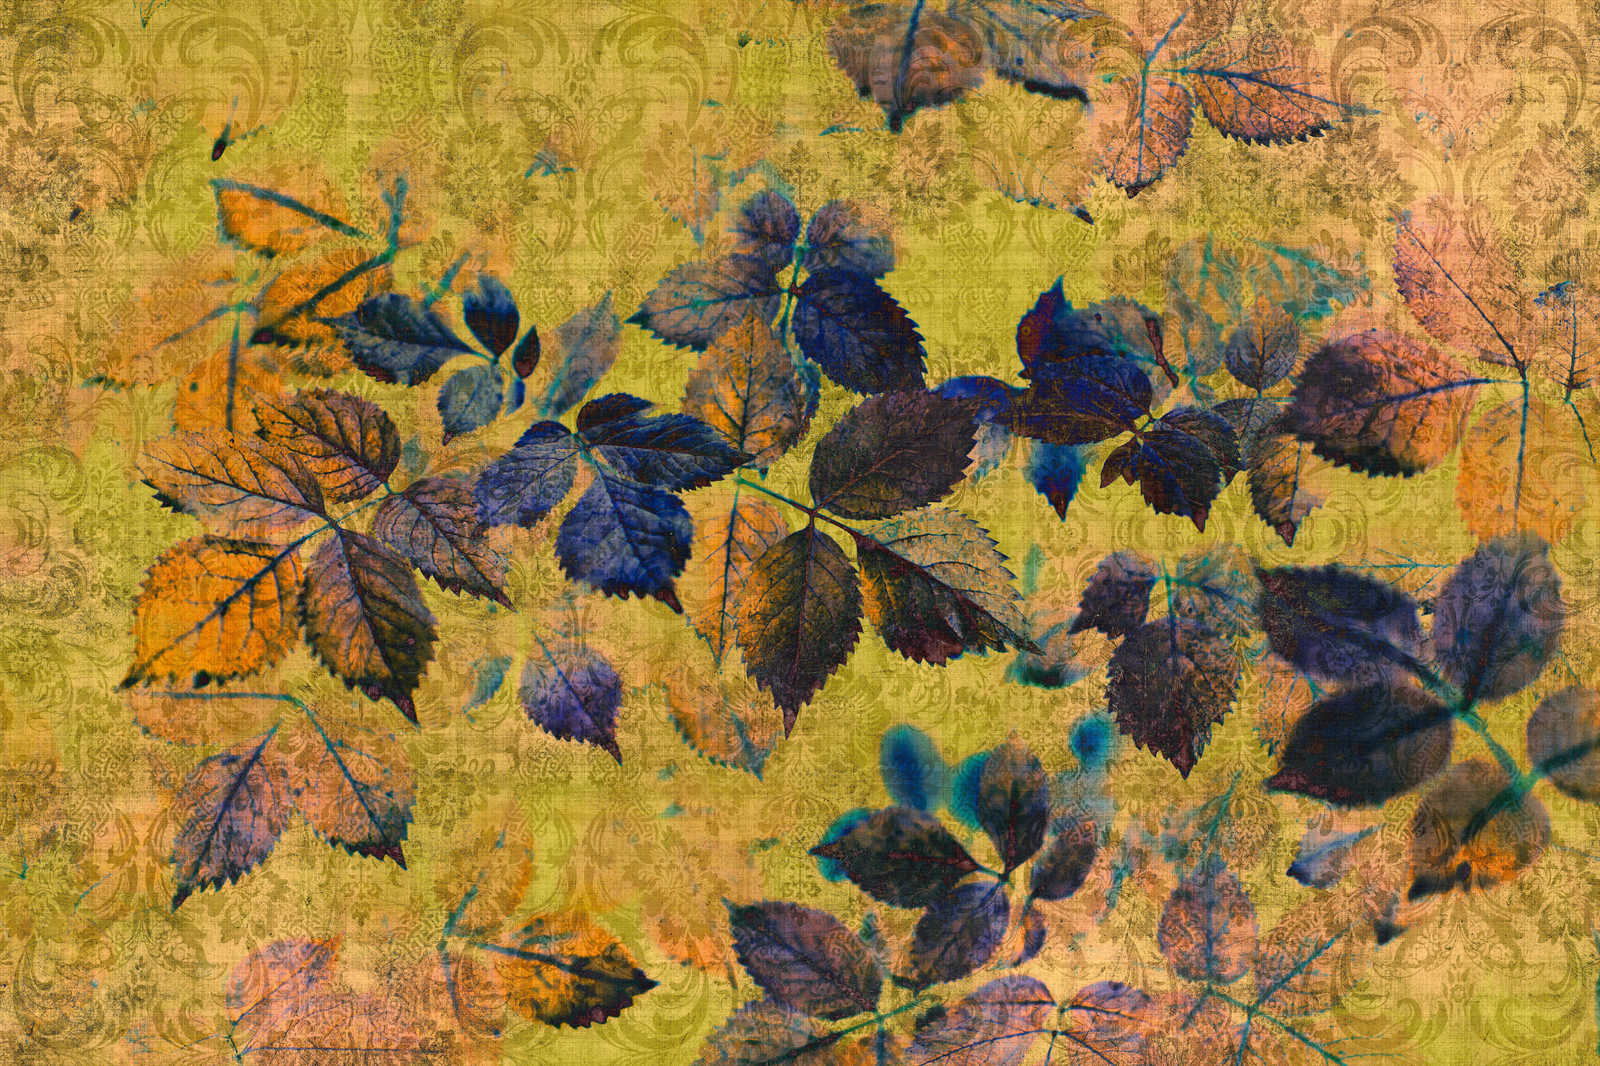             Indian summer 1 - Tableau toile avec feuilles et ornements en structure lin naturel - 0,90 m x 0,60 m
        